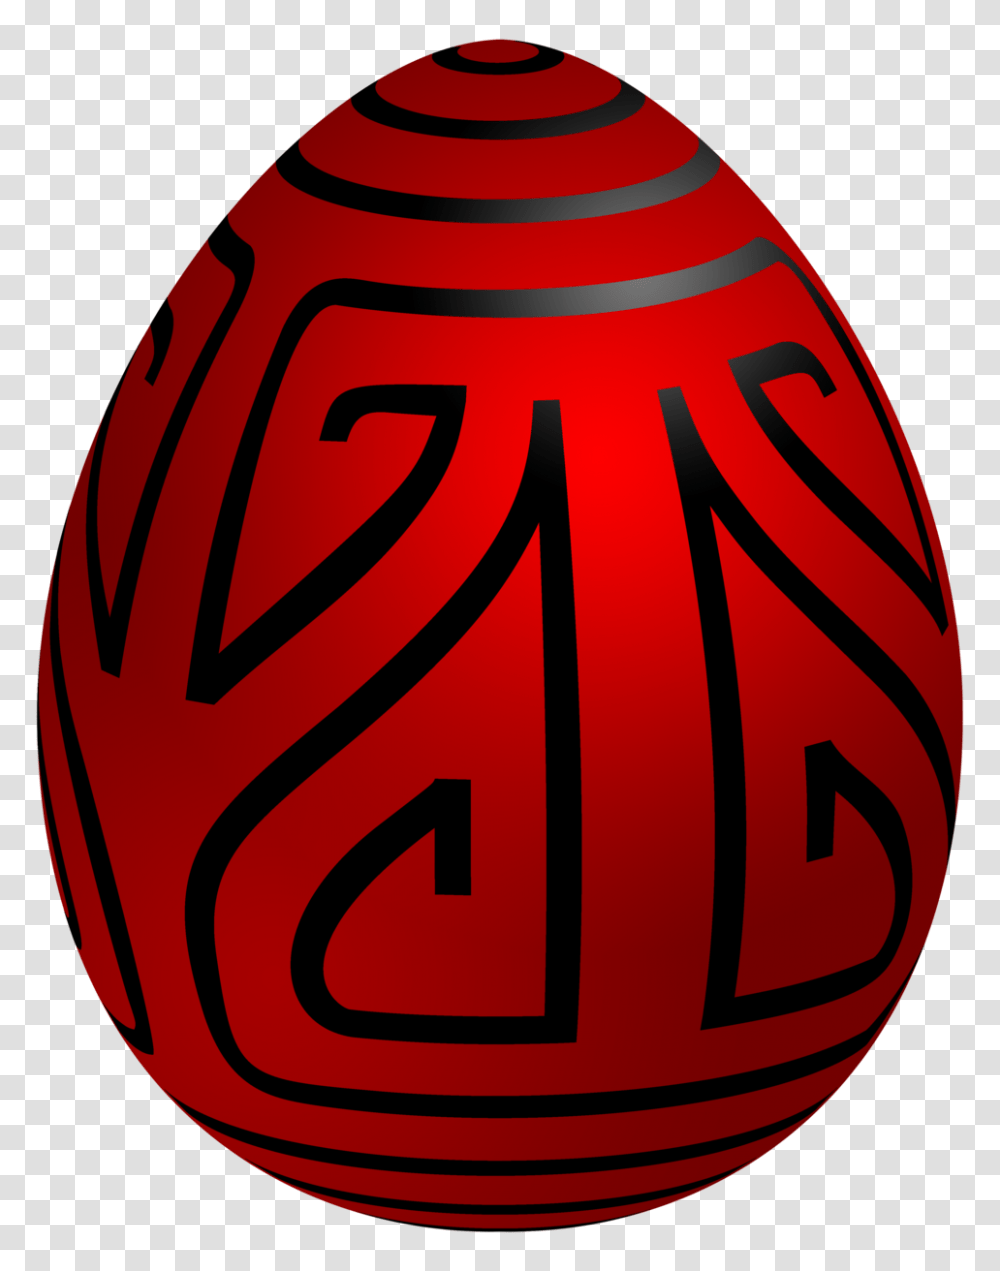 Easter Red Deco Egg Clip Art, Plant, Jar Transparent Png